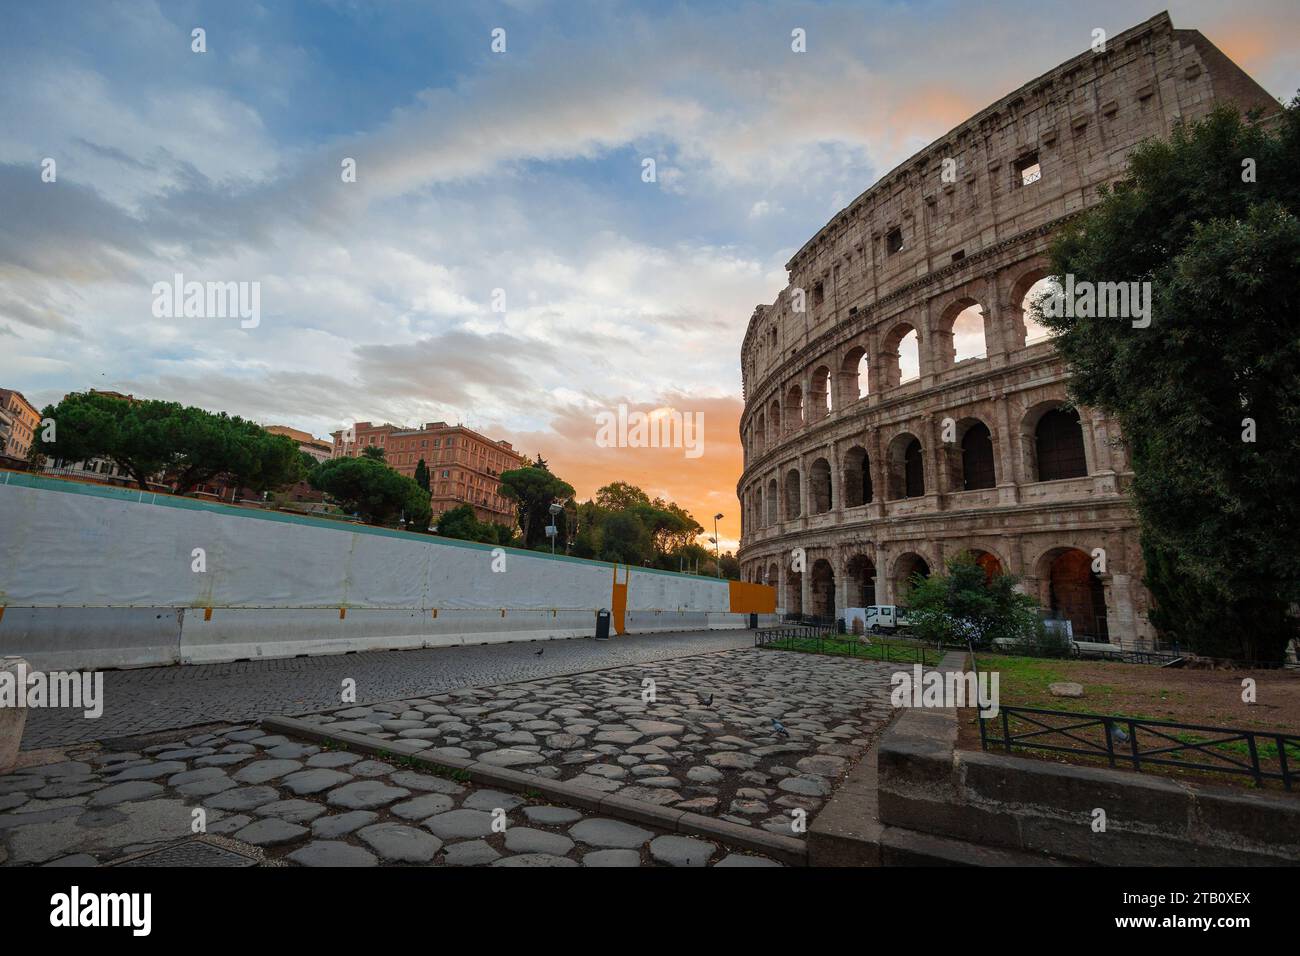 Vue matinale du colisée à Rome, ciel rouge et bleu avec soleil sur le point de se lever au-dessus du grand amphithéâtre célèbre. Réglage d'automne. Banque D'Images